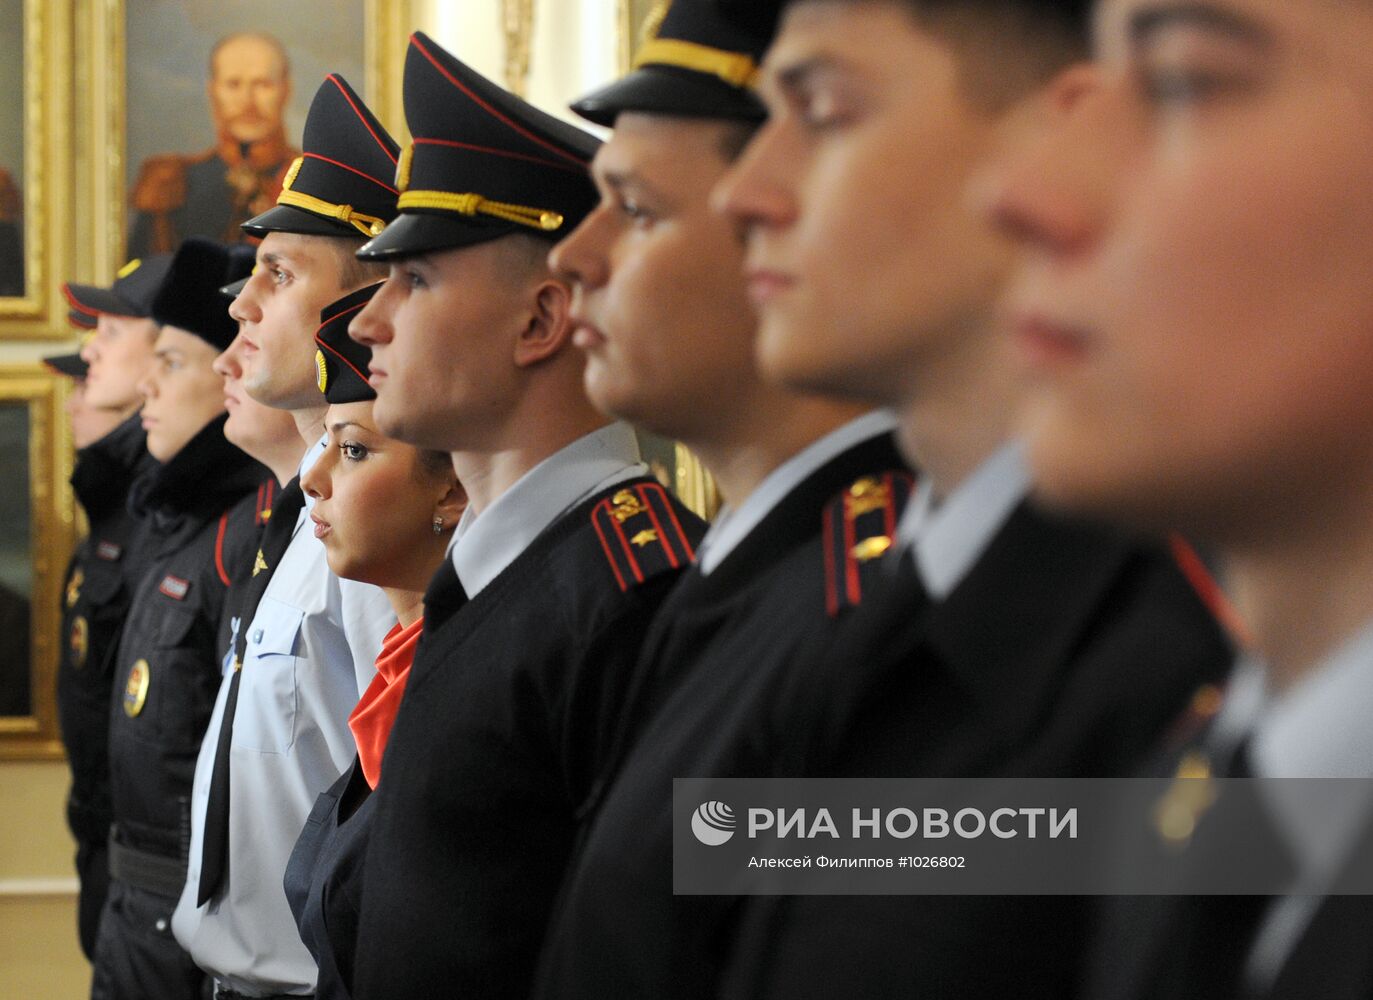 Презентация новой формы и удостоверений для сотрудников МВД РФ